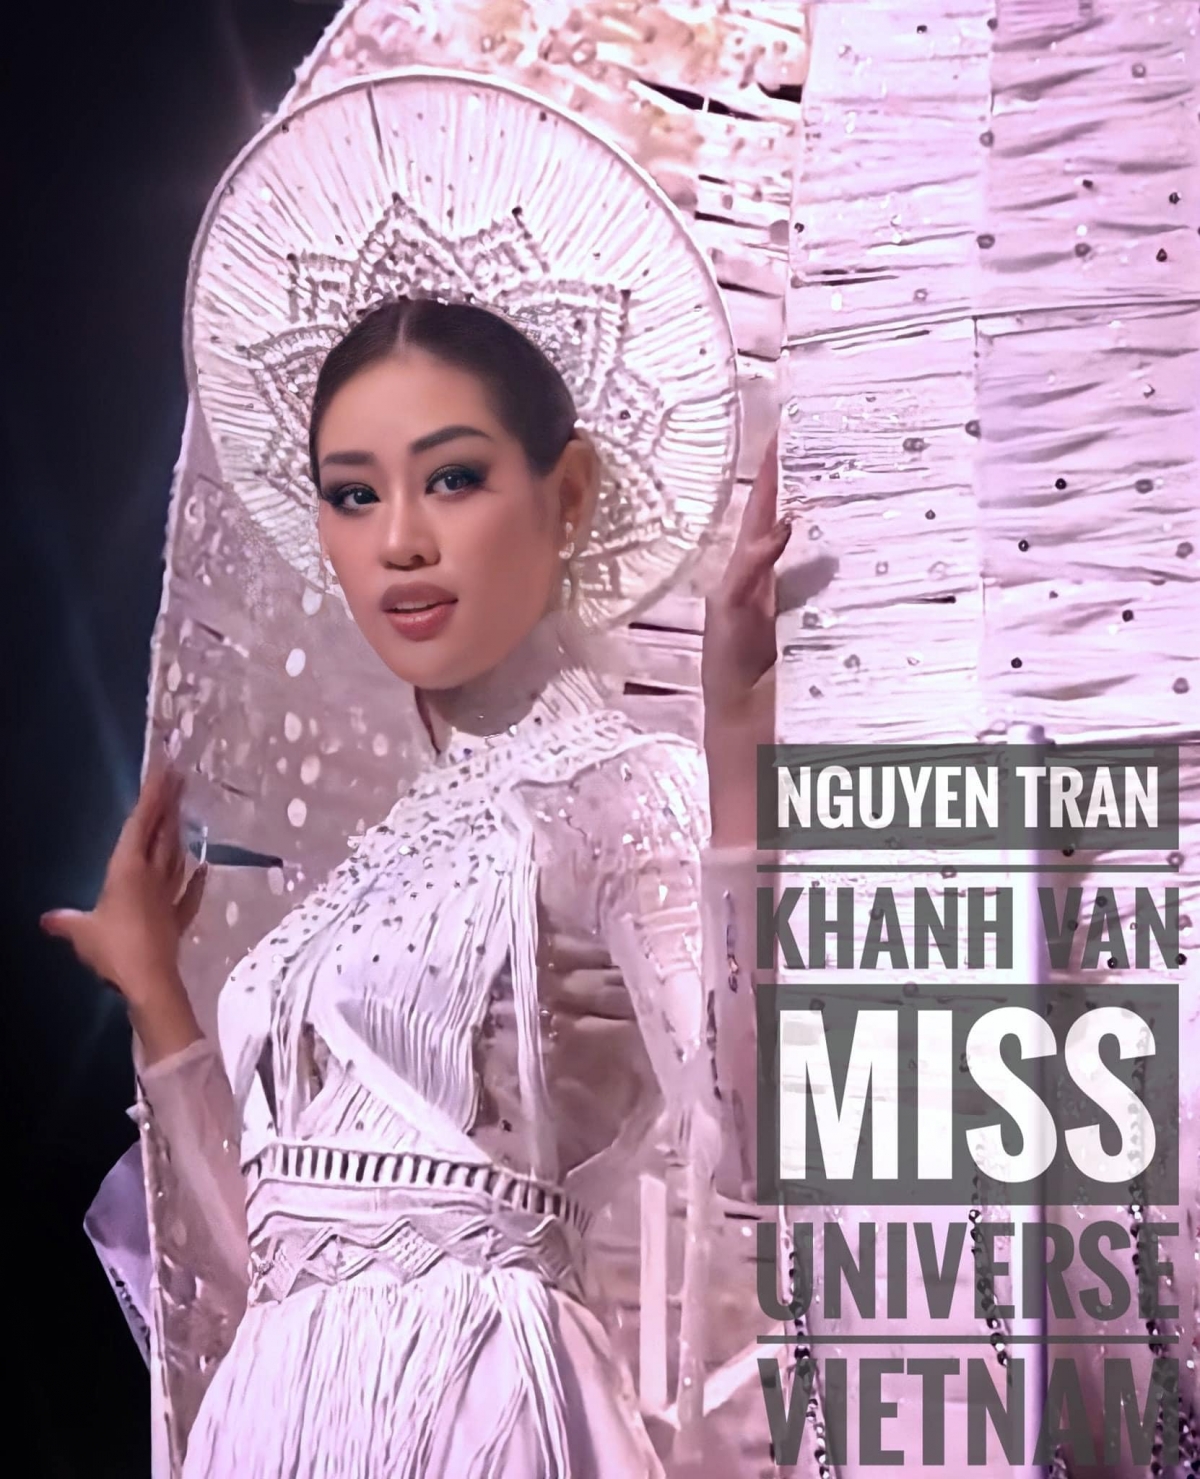 Màn xử lý 'đi vào lòng người' với sự cố 'cái kén' của Khánh Vân tại Miss Universe - Ảnh 3.